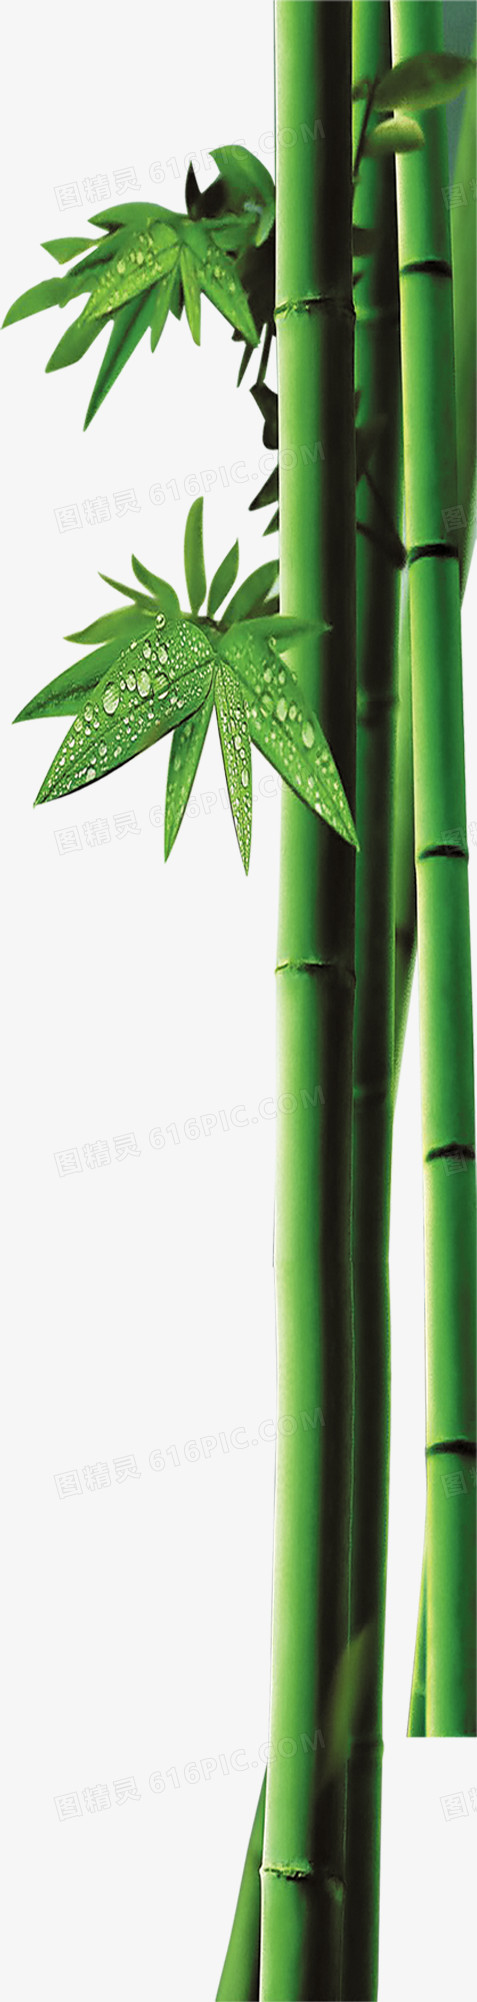 竹子绿叶端午节装饰图片